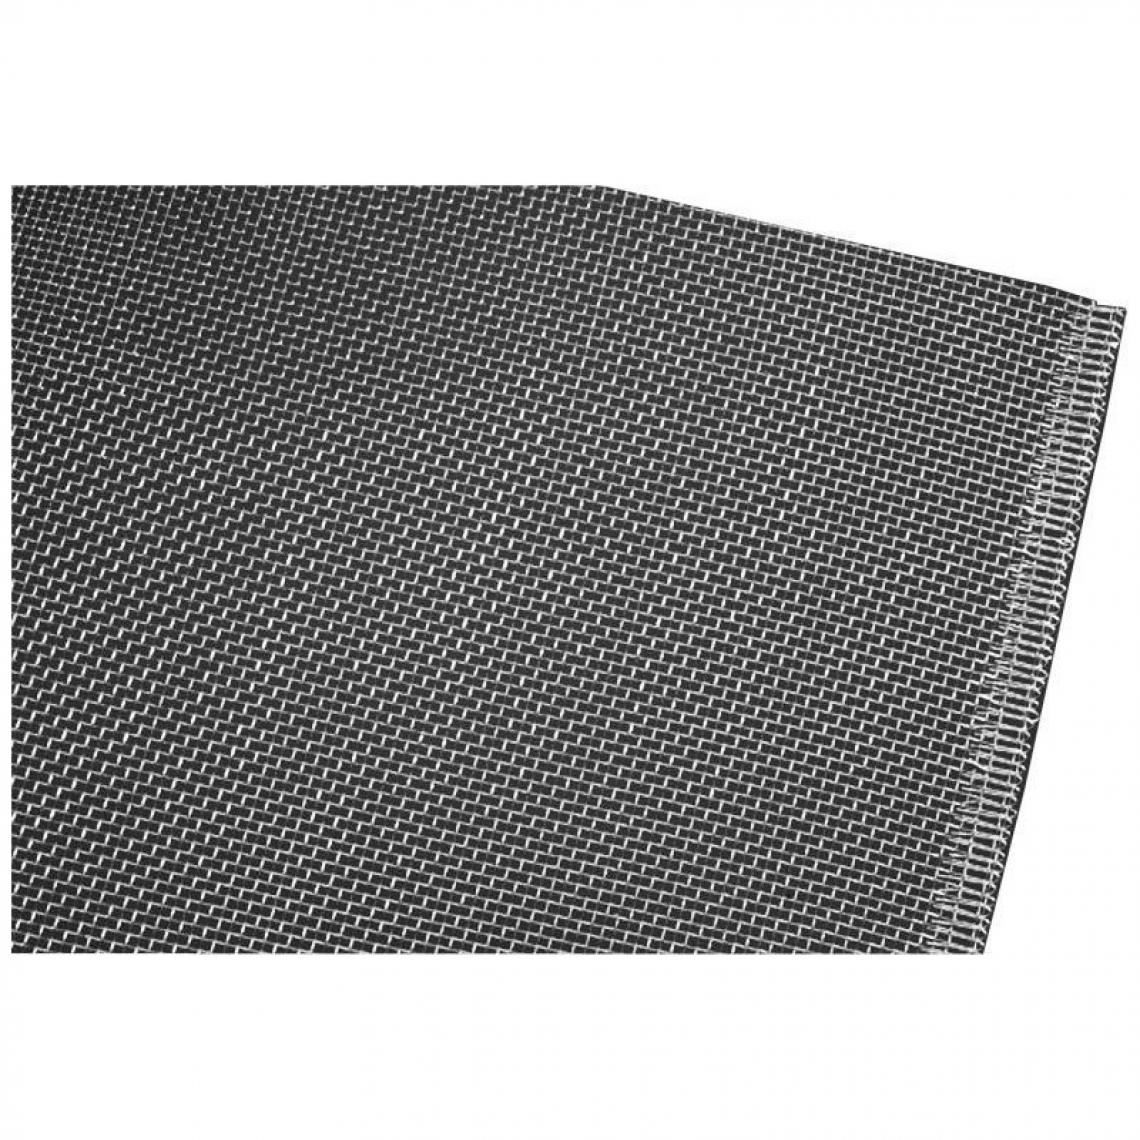 marque generique - Rouleau tissu 1,20x25m acier inoxidable - Clôture grillagée